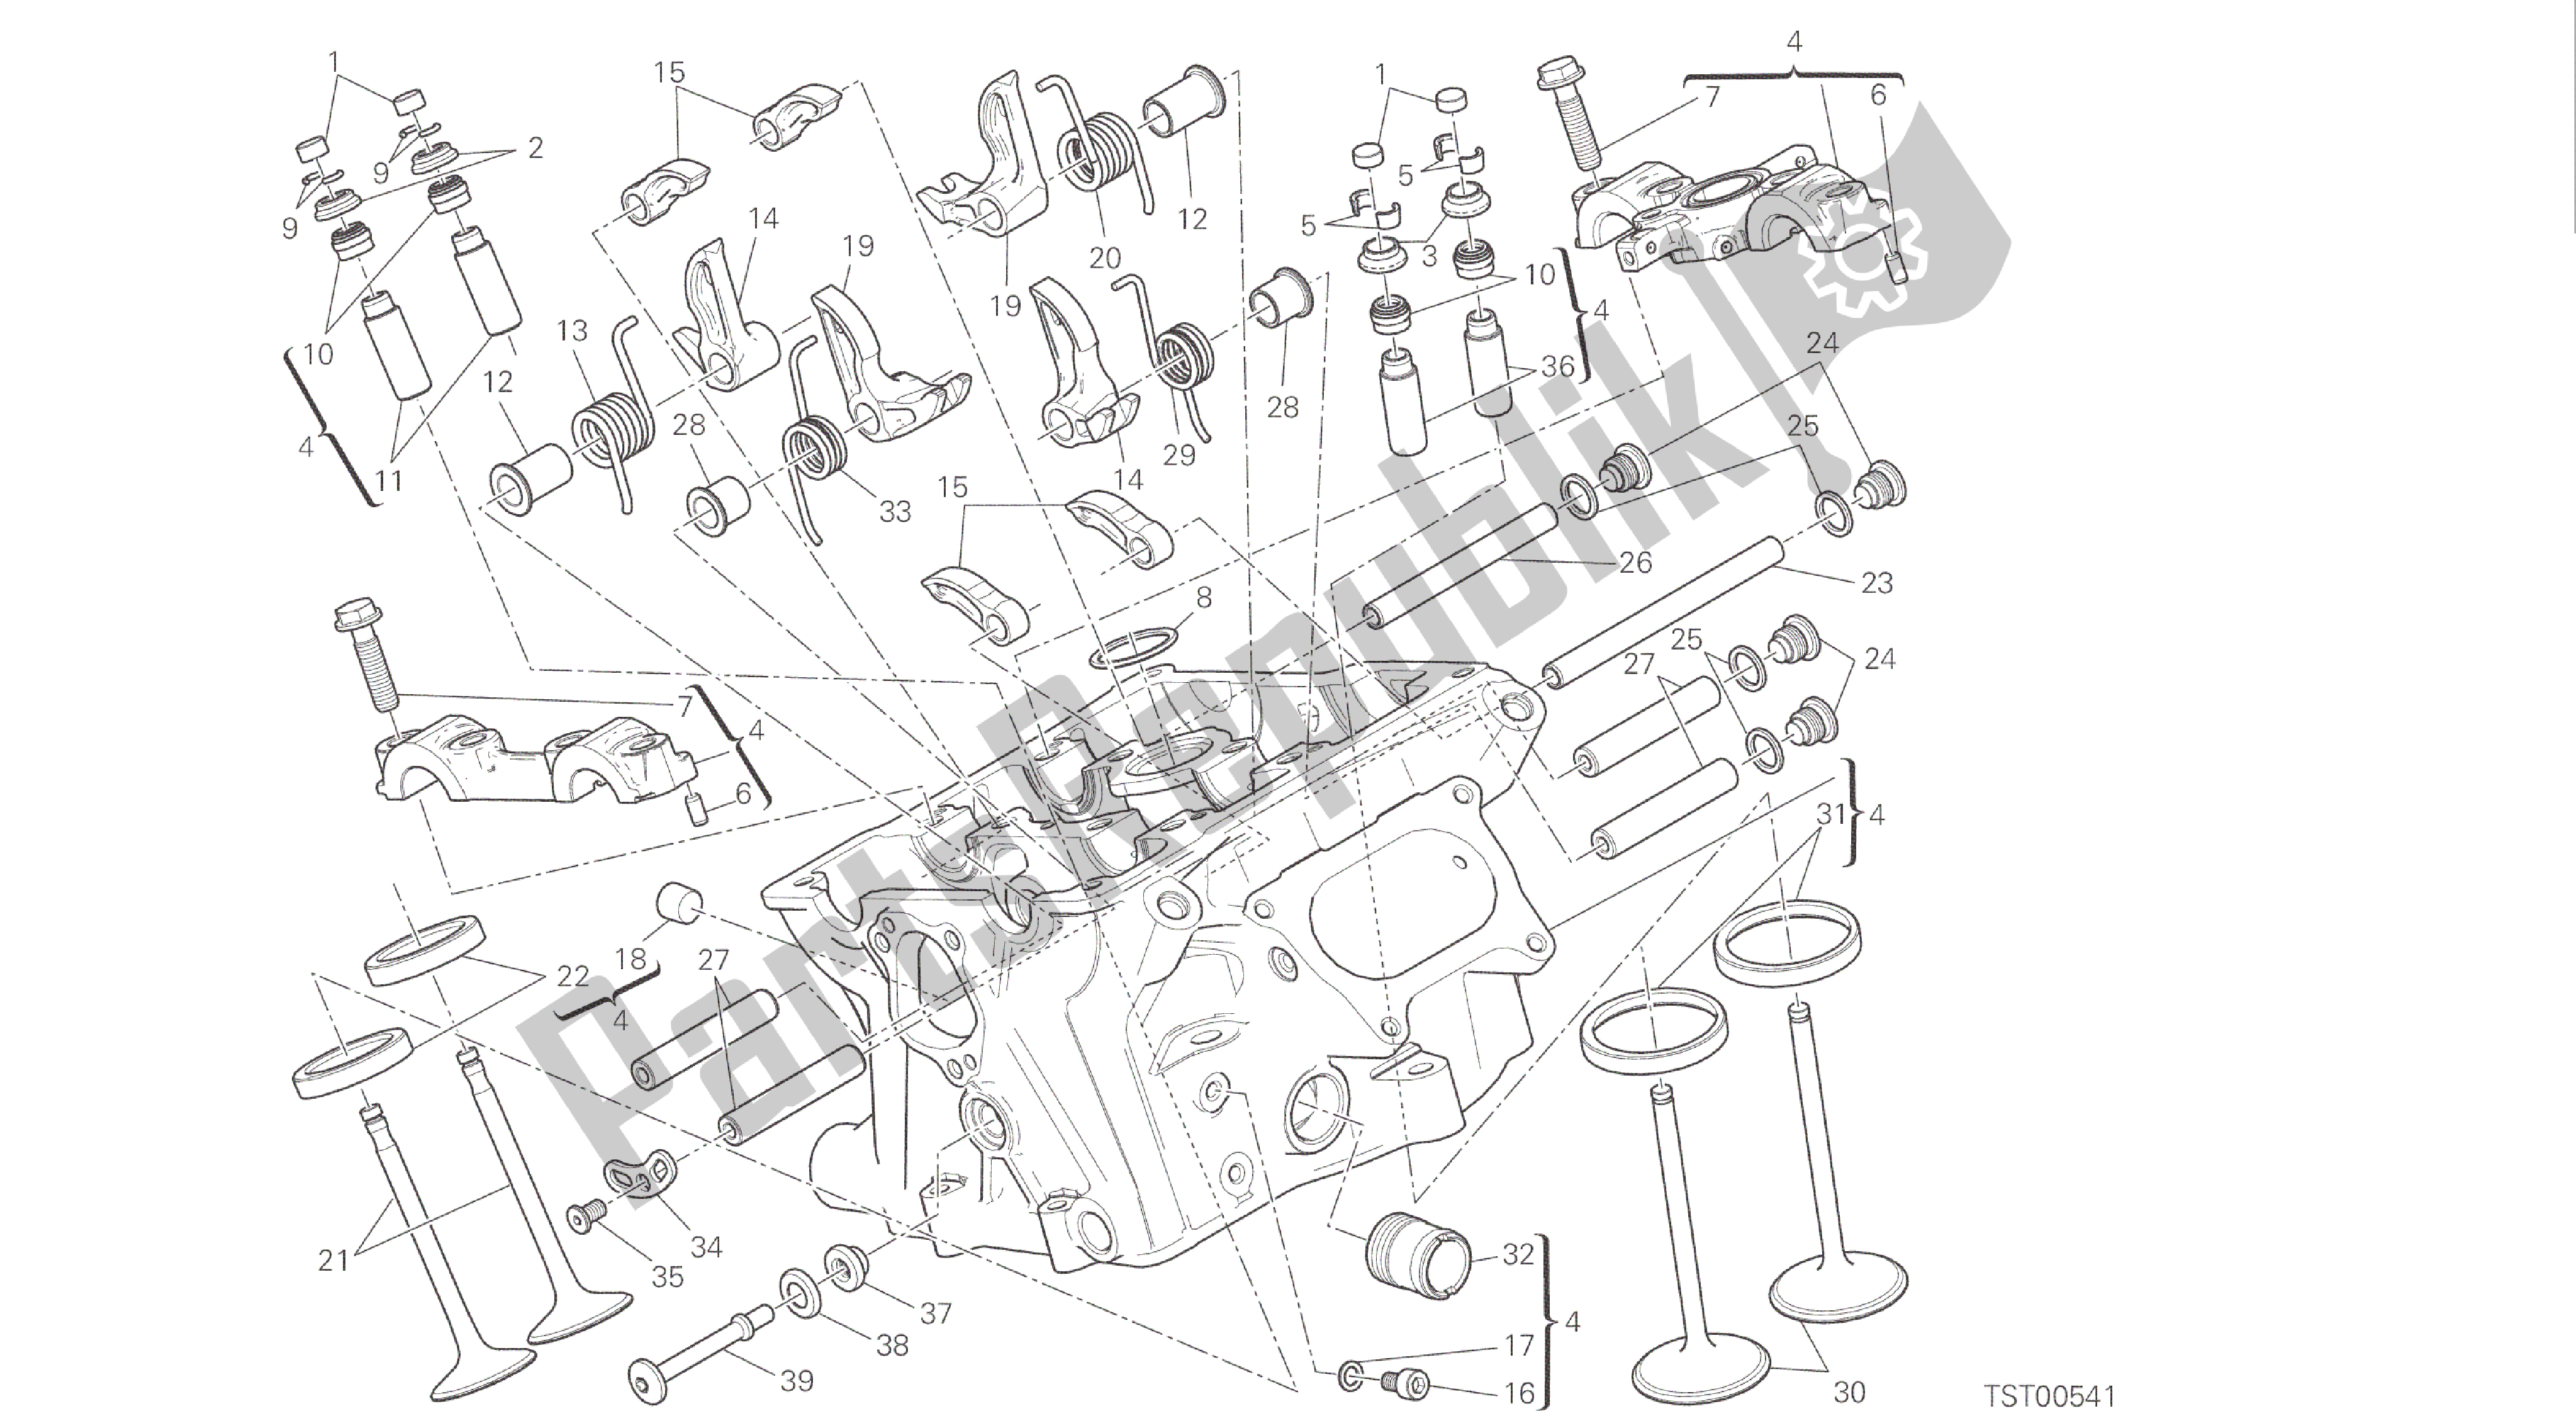 Alle onderdelen voor de Tekening 015 - Verticale Kop [mod: 1299s; Xst: Aus, Eur, Fra, Jap, Twn] Groepsmotor van de Ducati Panigale S ABS 1299 2016